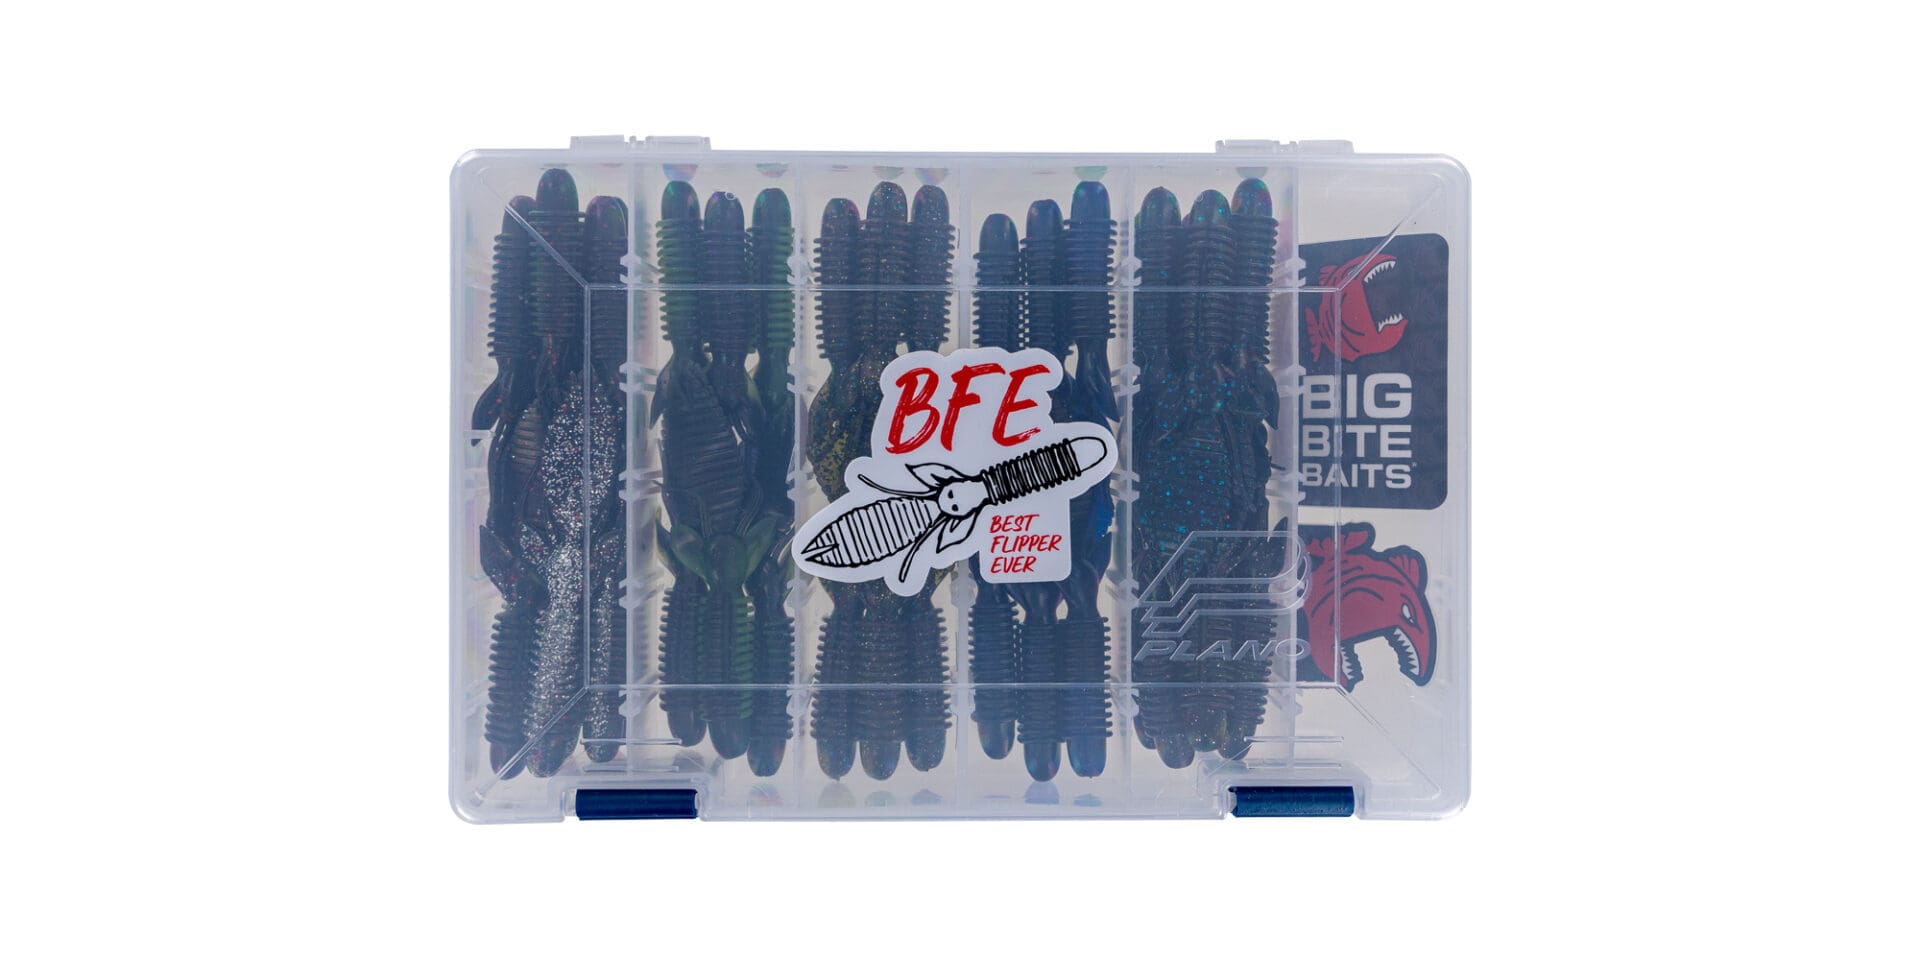 BFE Kit - Big Bite Baits